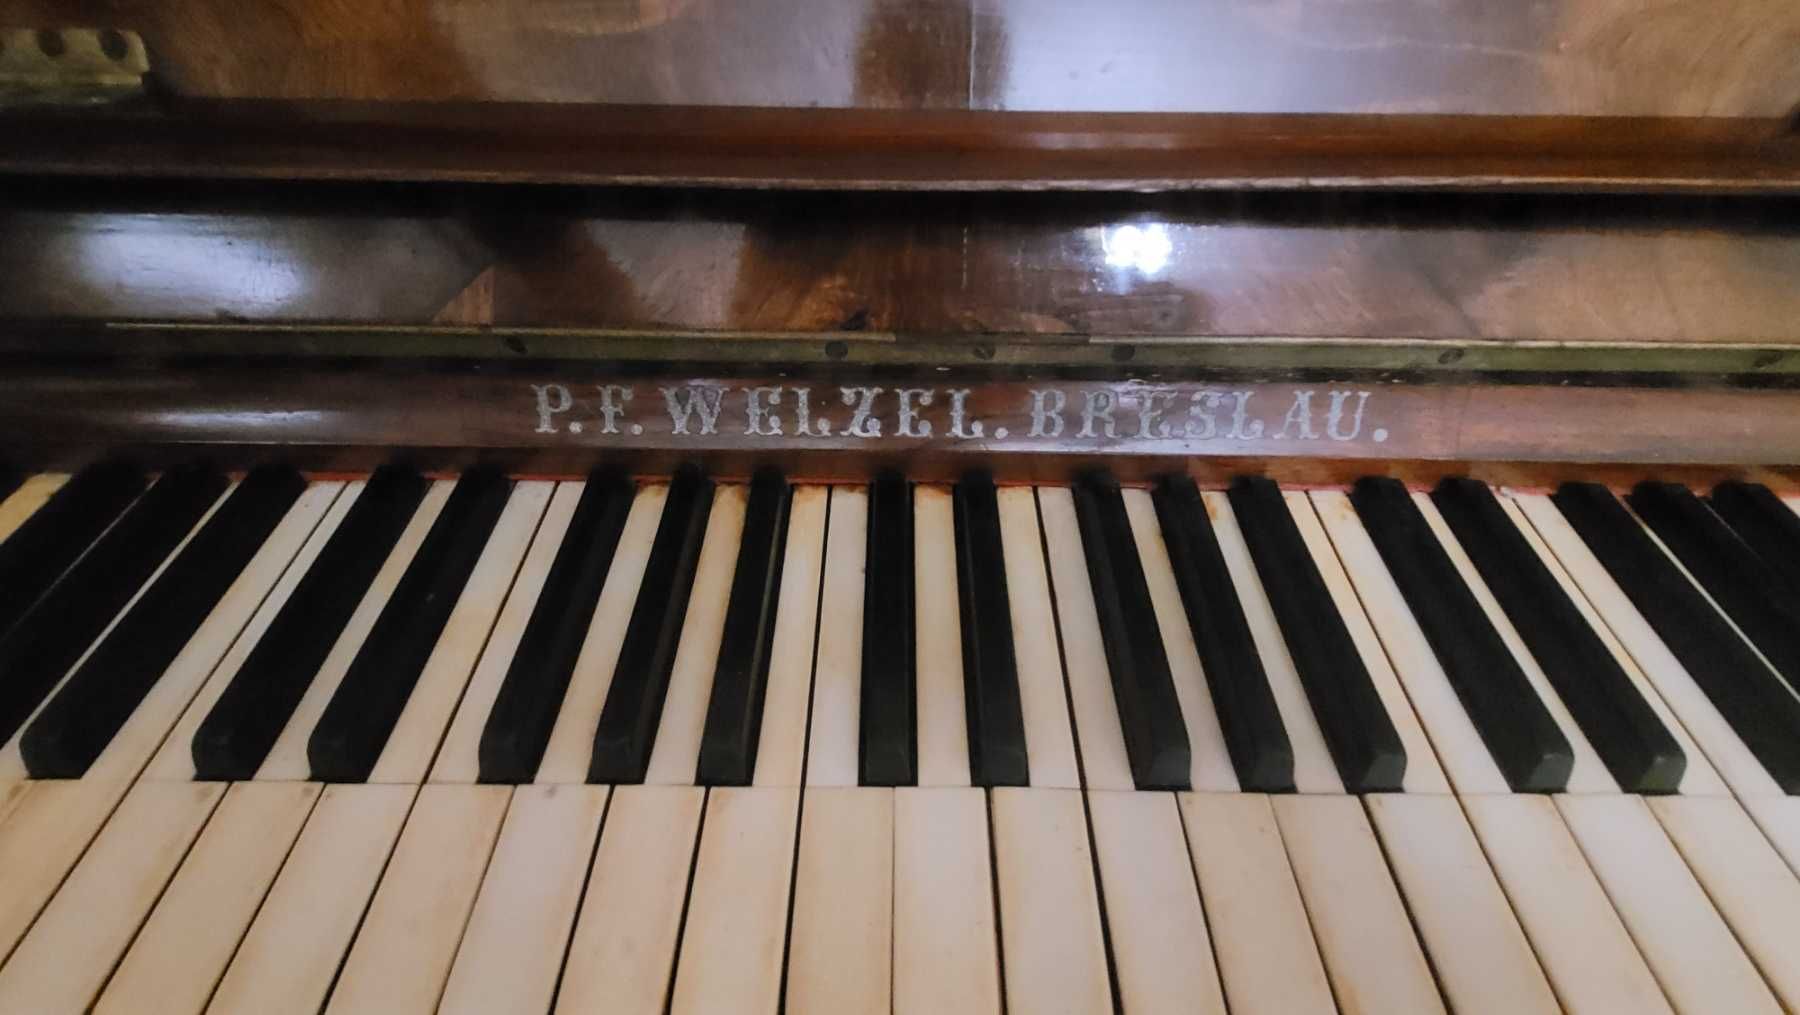 Продам пианино P.F.WELZEL.BRESLAU. 1864 года.